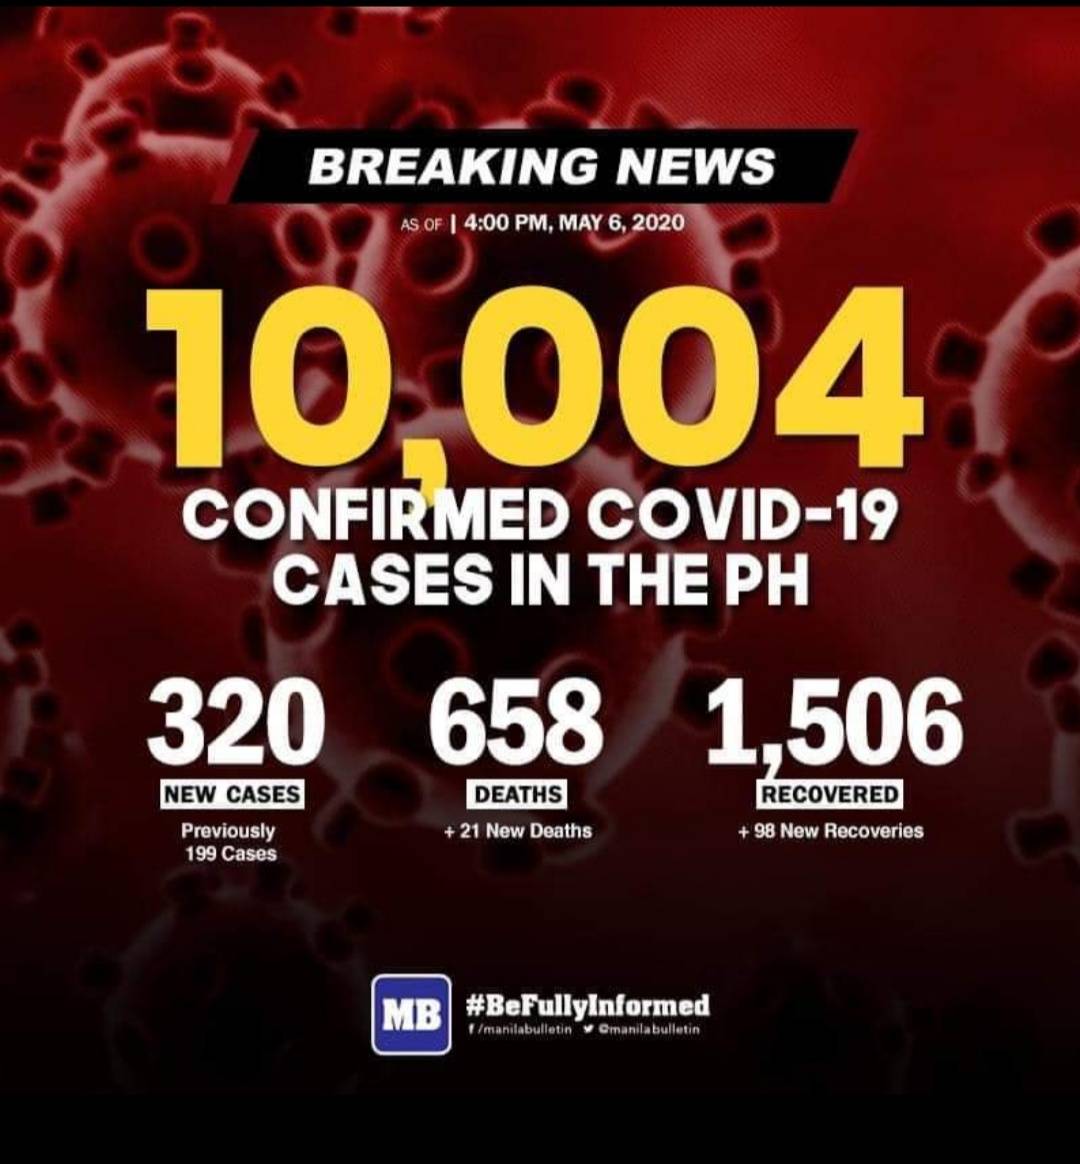 フィリピン全土でコロナウィルスに感染した症例は、本日5月6日の時点で10,000人を超えました。
現在マステストが進む中、感染者の増加が続いています。
感染者の増加を防ぐために、安全に家で過ごしましょう。

参照元：MANILA BULLETIN
https://www.facebook.com/manilabulletin/

